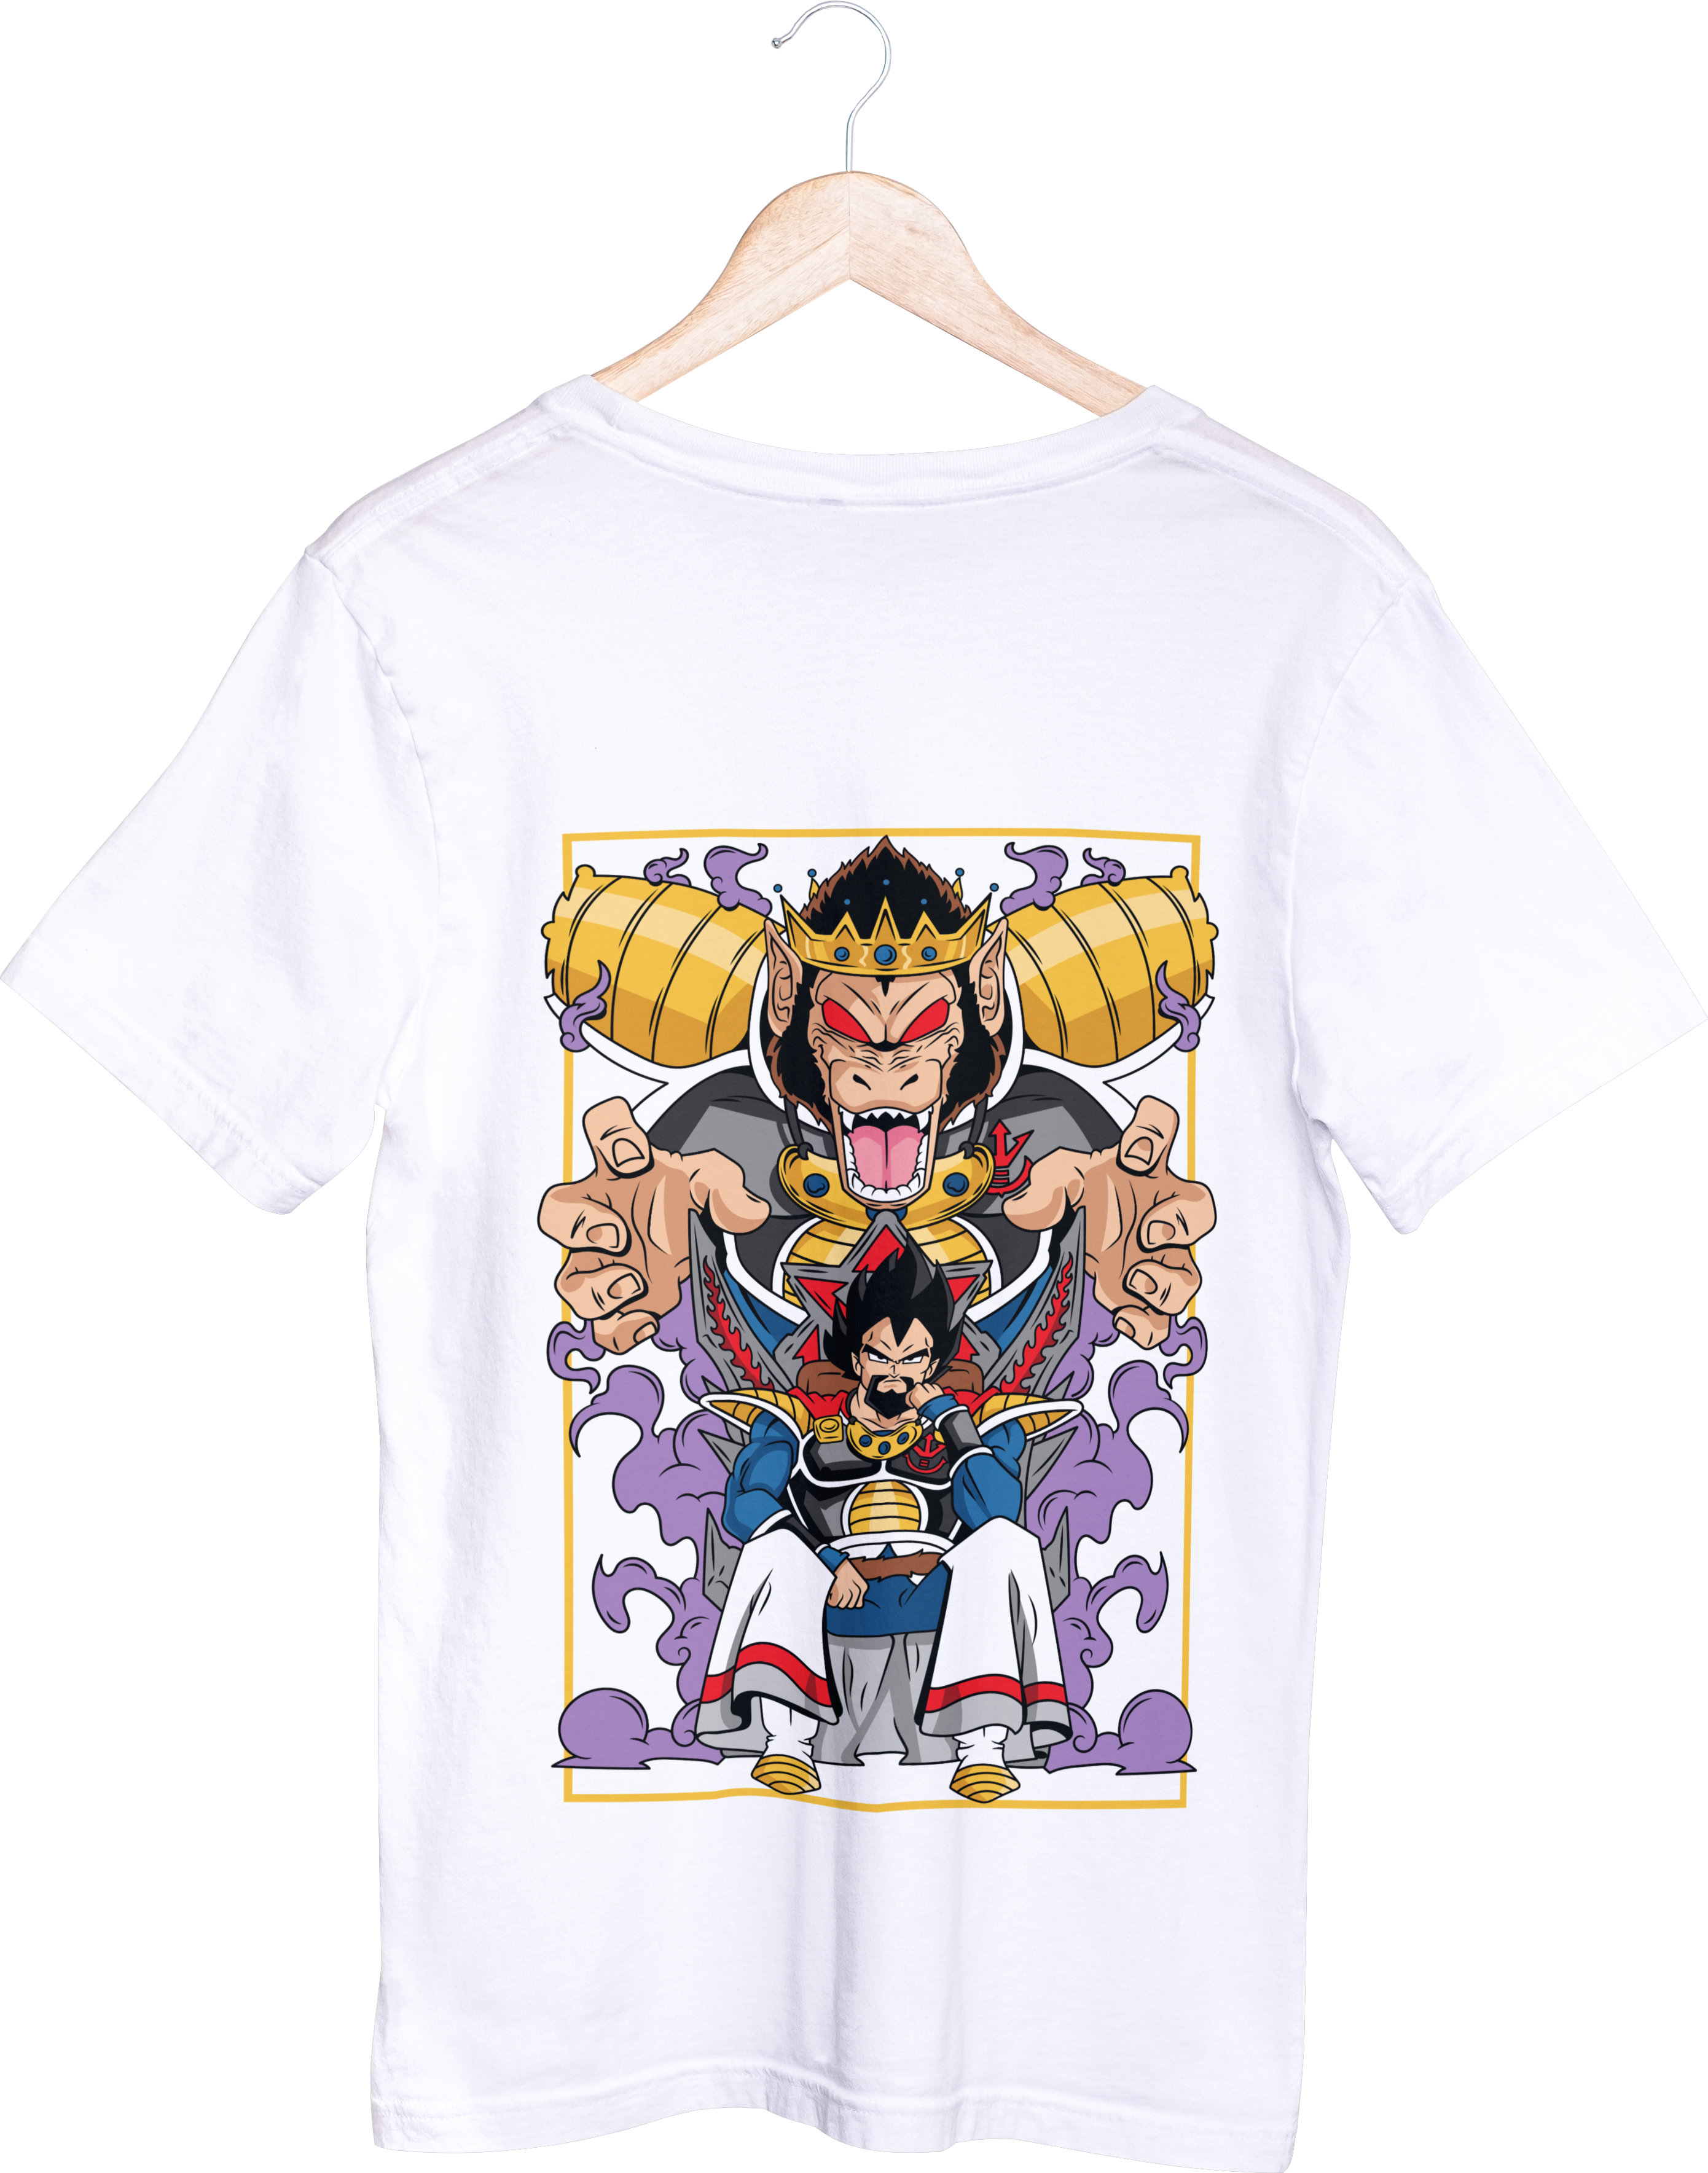 Dragon Ball Tops - חולצה המלך וג'יטה - דרגון בול